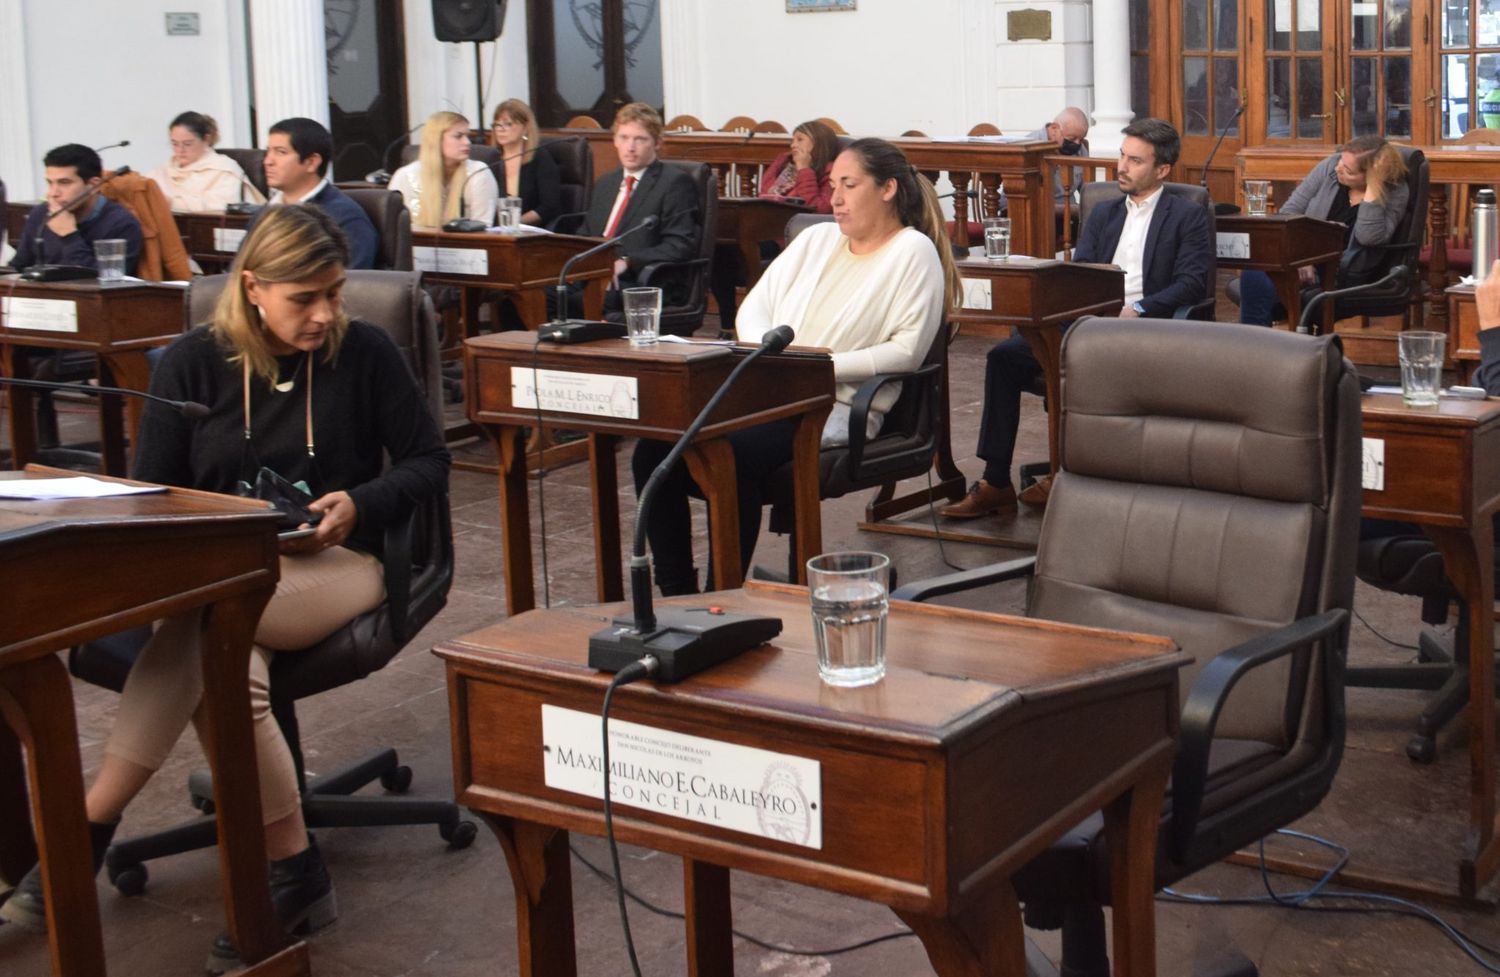 Caso Cabaleyro: En San Nicolás buscan crear una comisión para investigar al concejal detenido del Frente de Todos